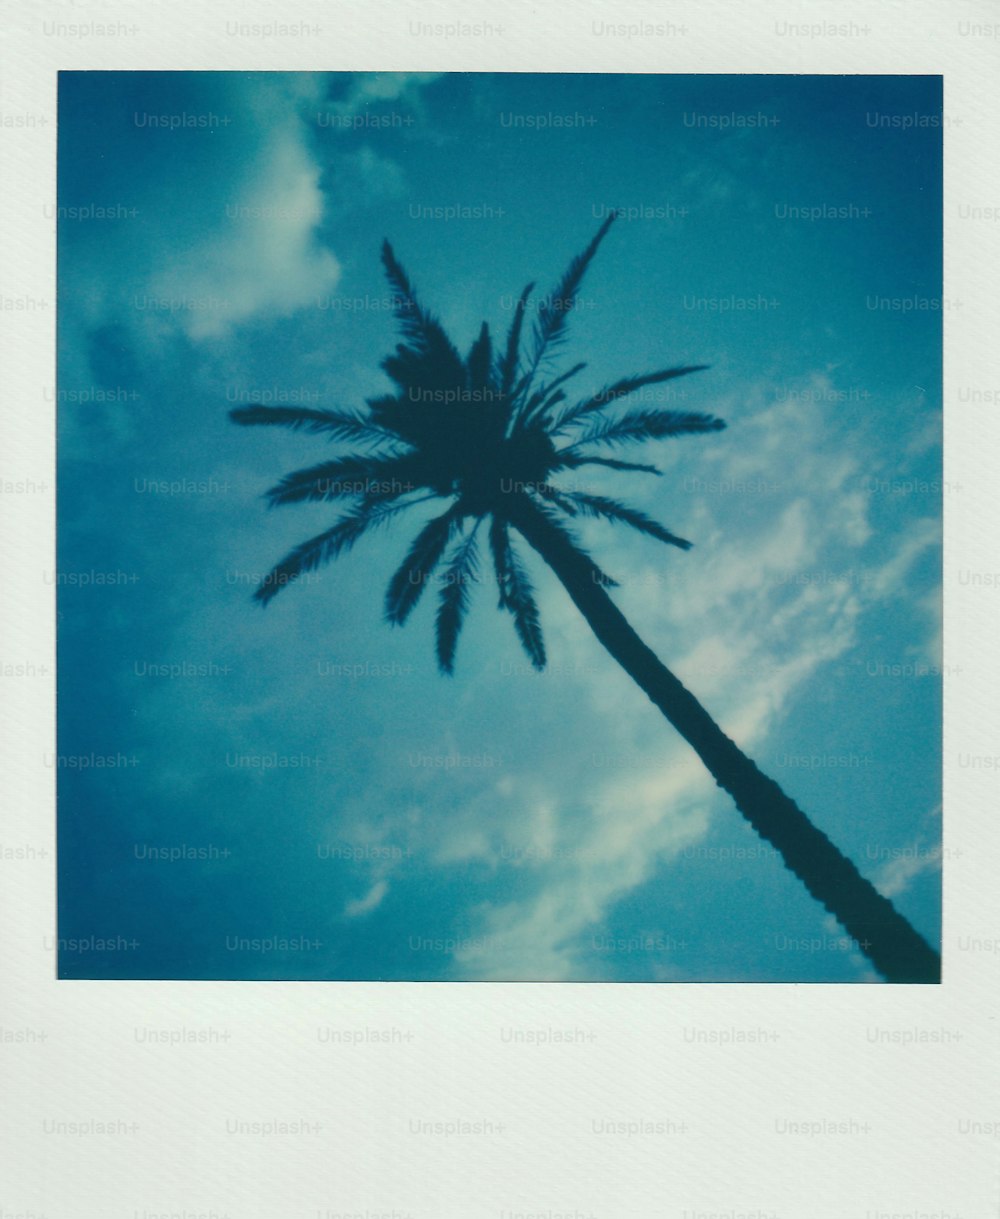 uma palmeira com um céu azul no fundo